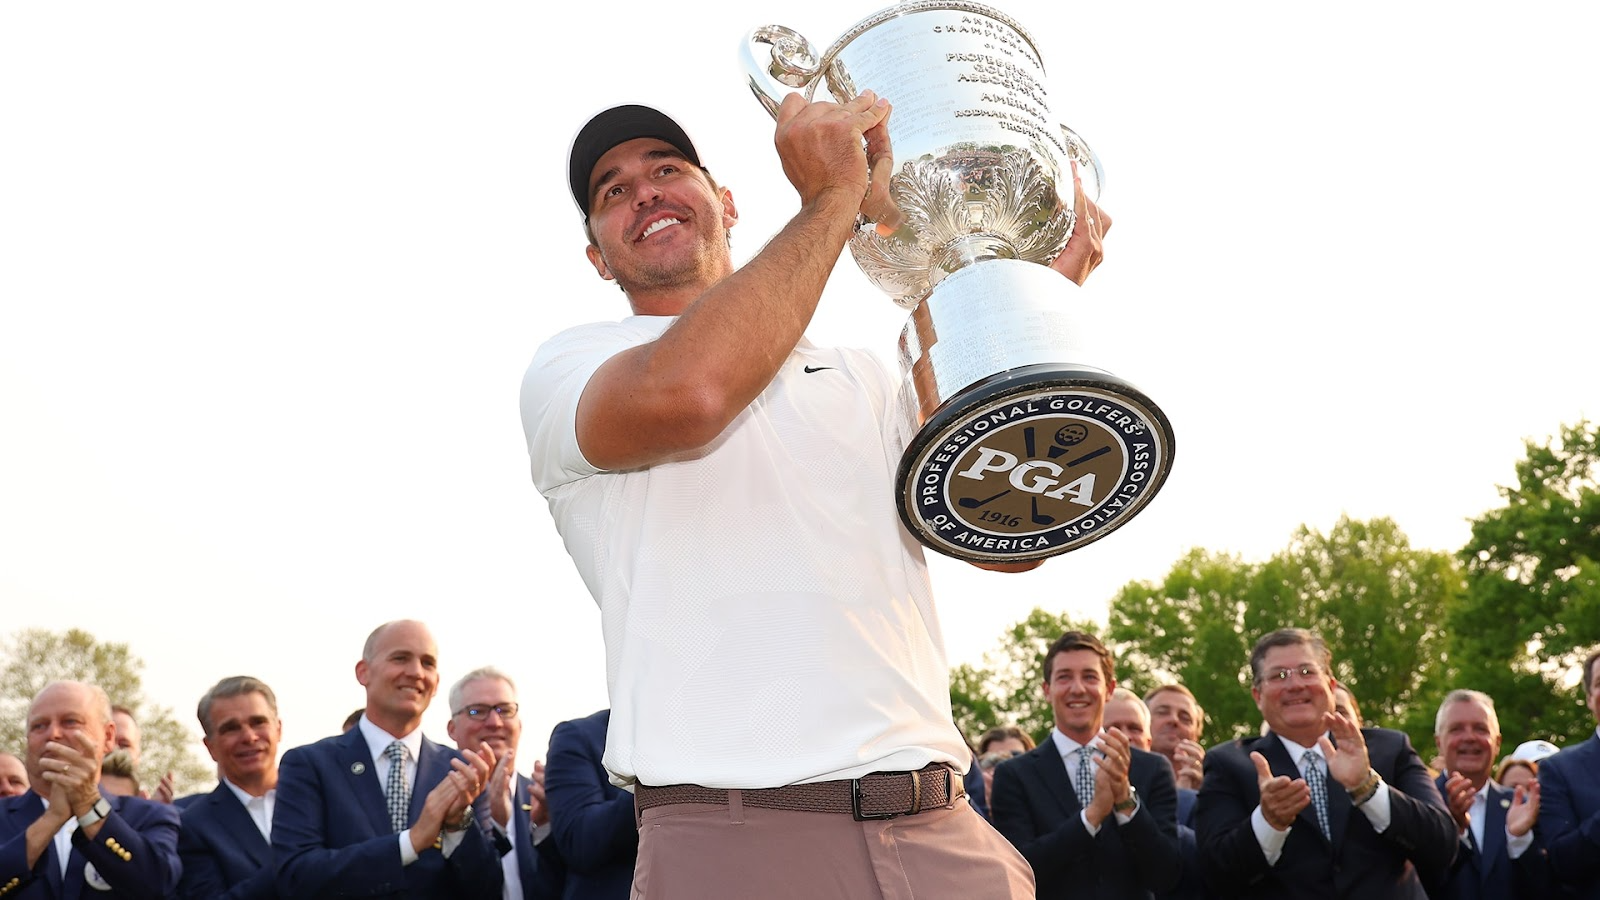 Brooks Koepka giành được cup Wanamaker thứ ba, danh hiệu lớn thứ năm tại PGA Championship